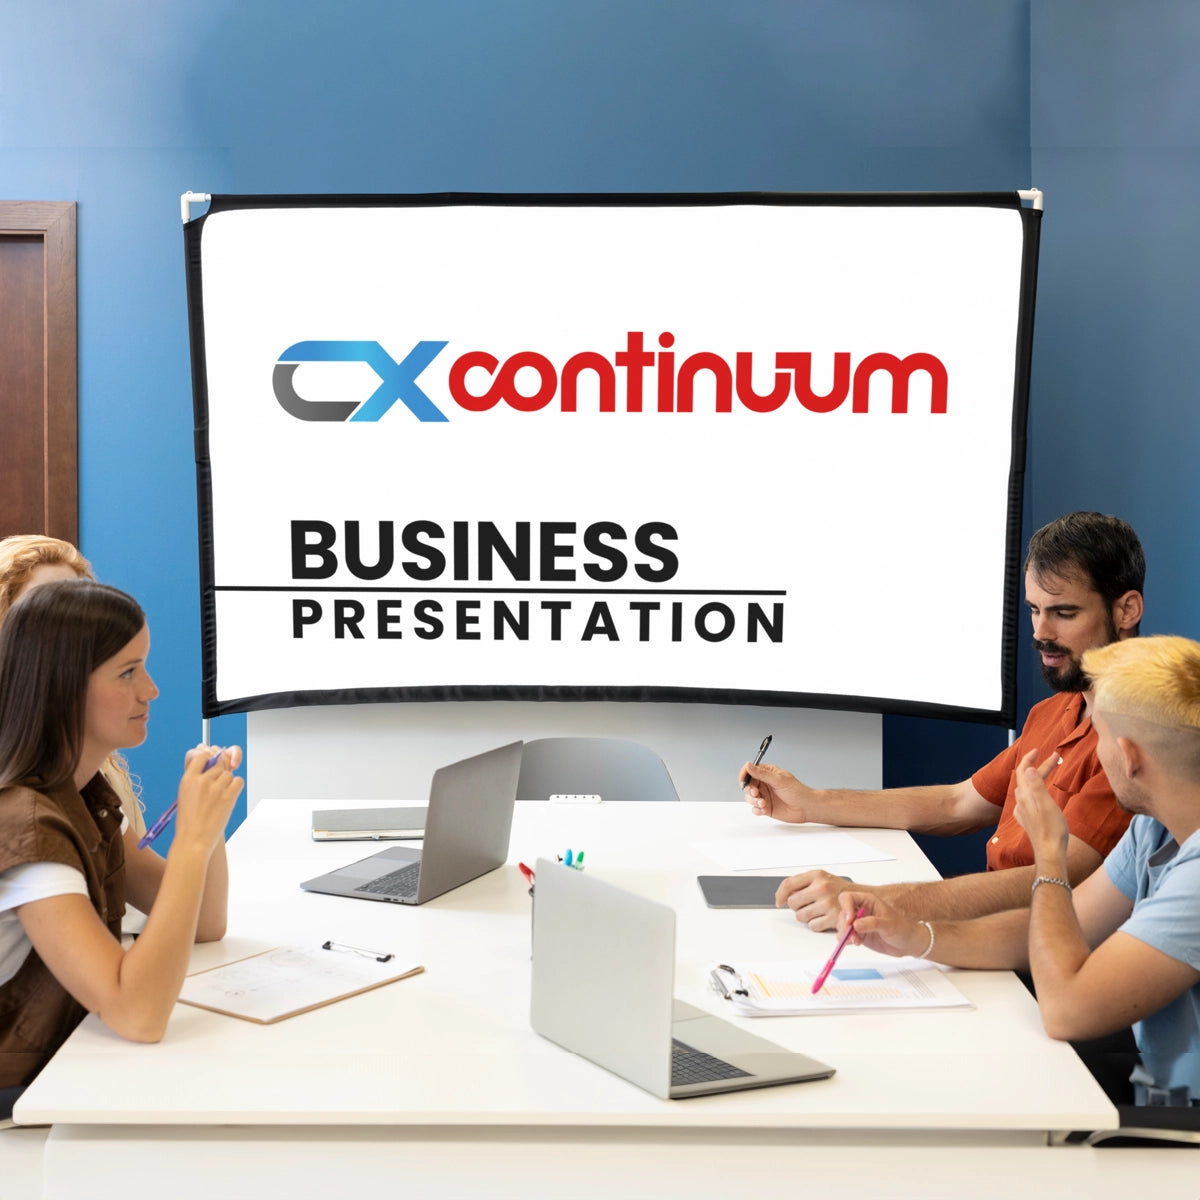 CXCONTINUUM.com